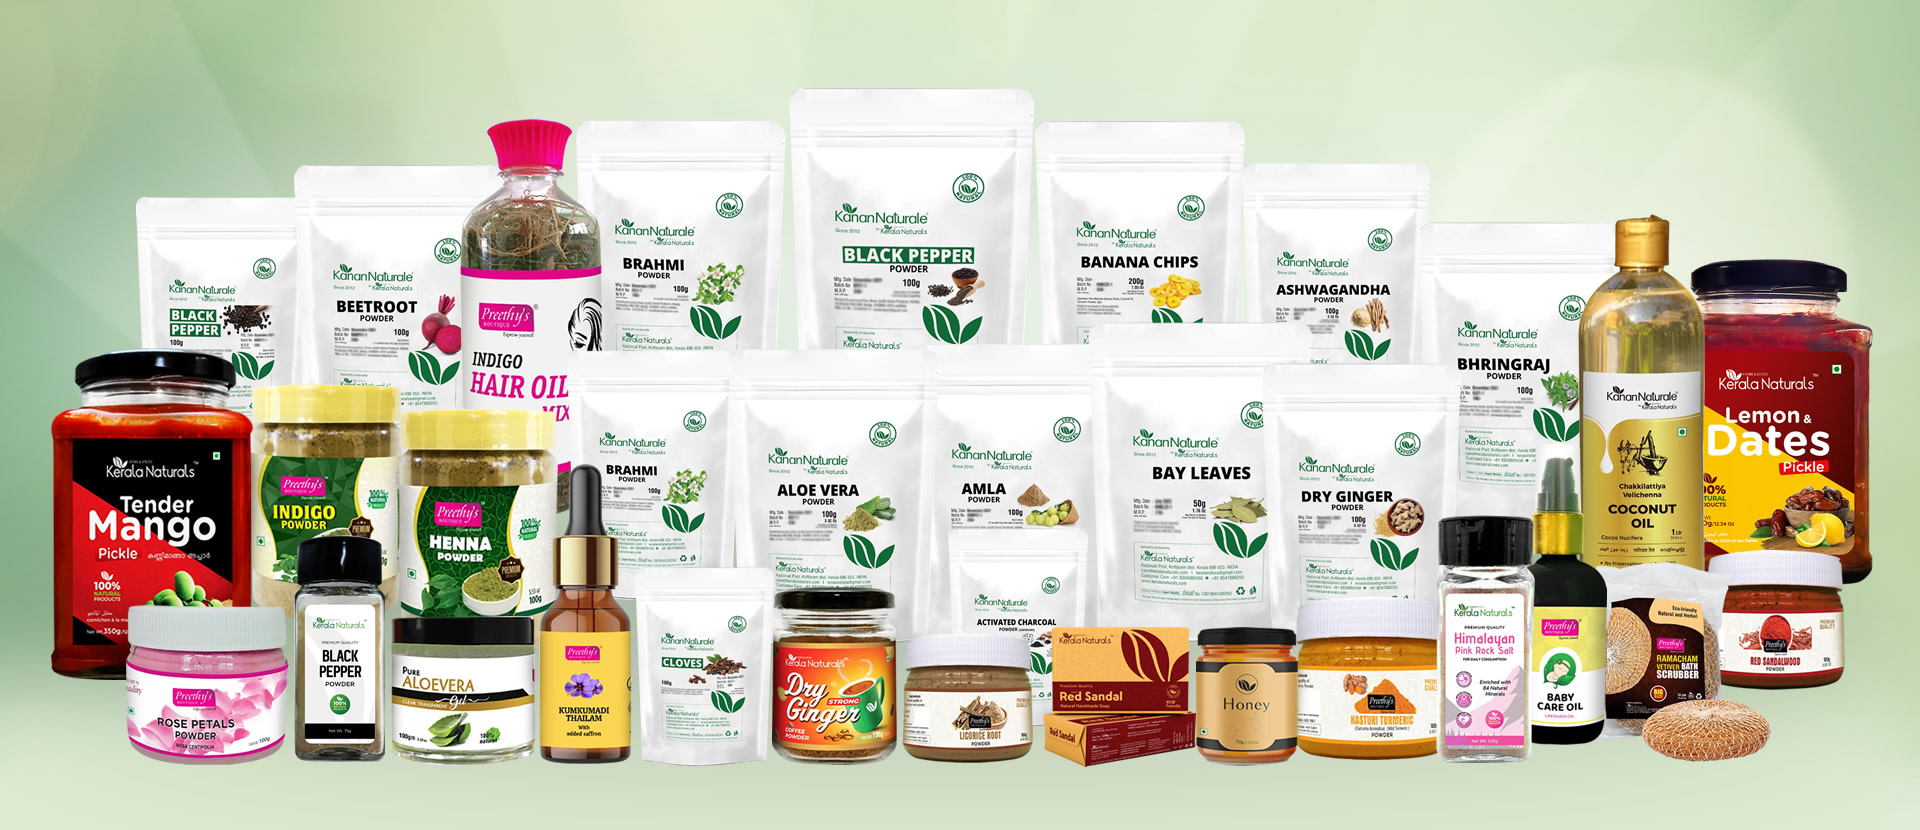 Kerala Naturals Products